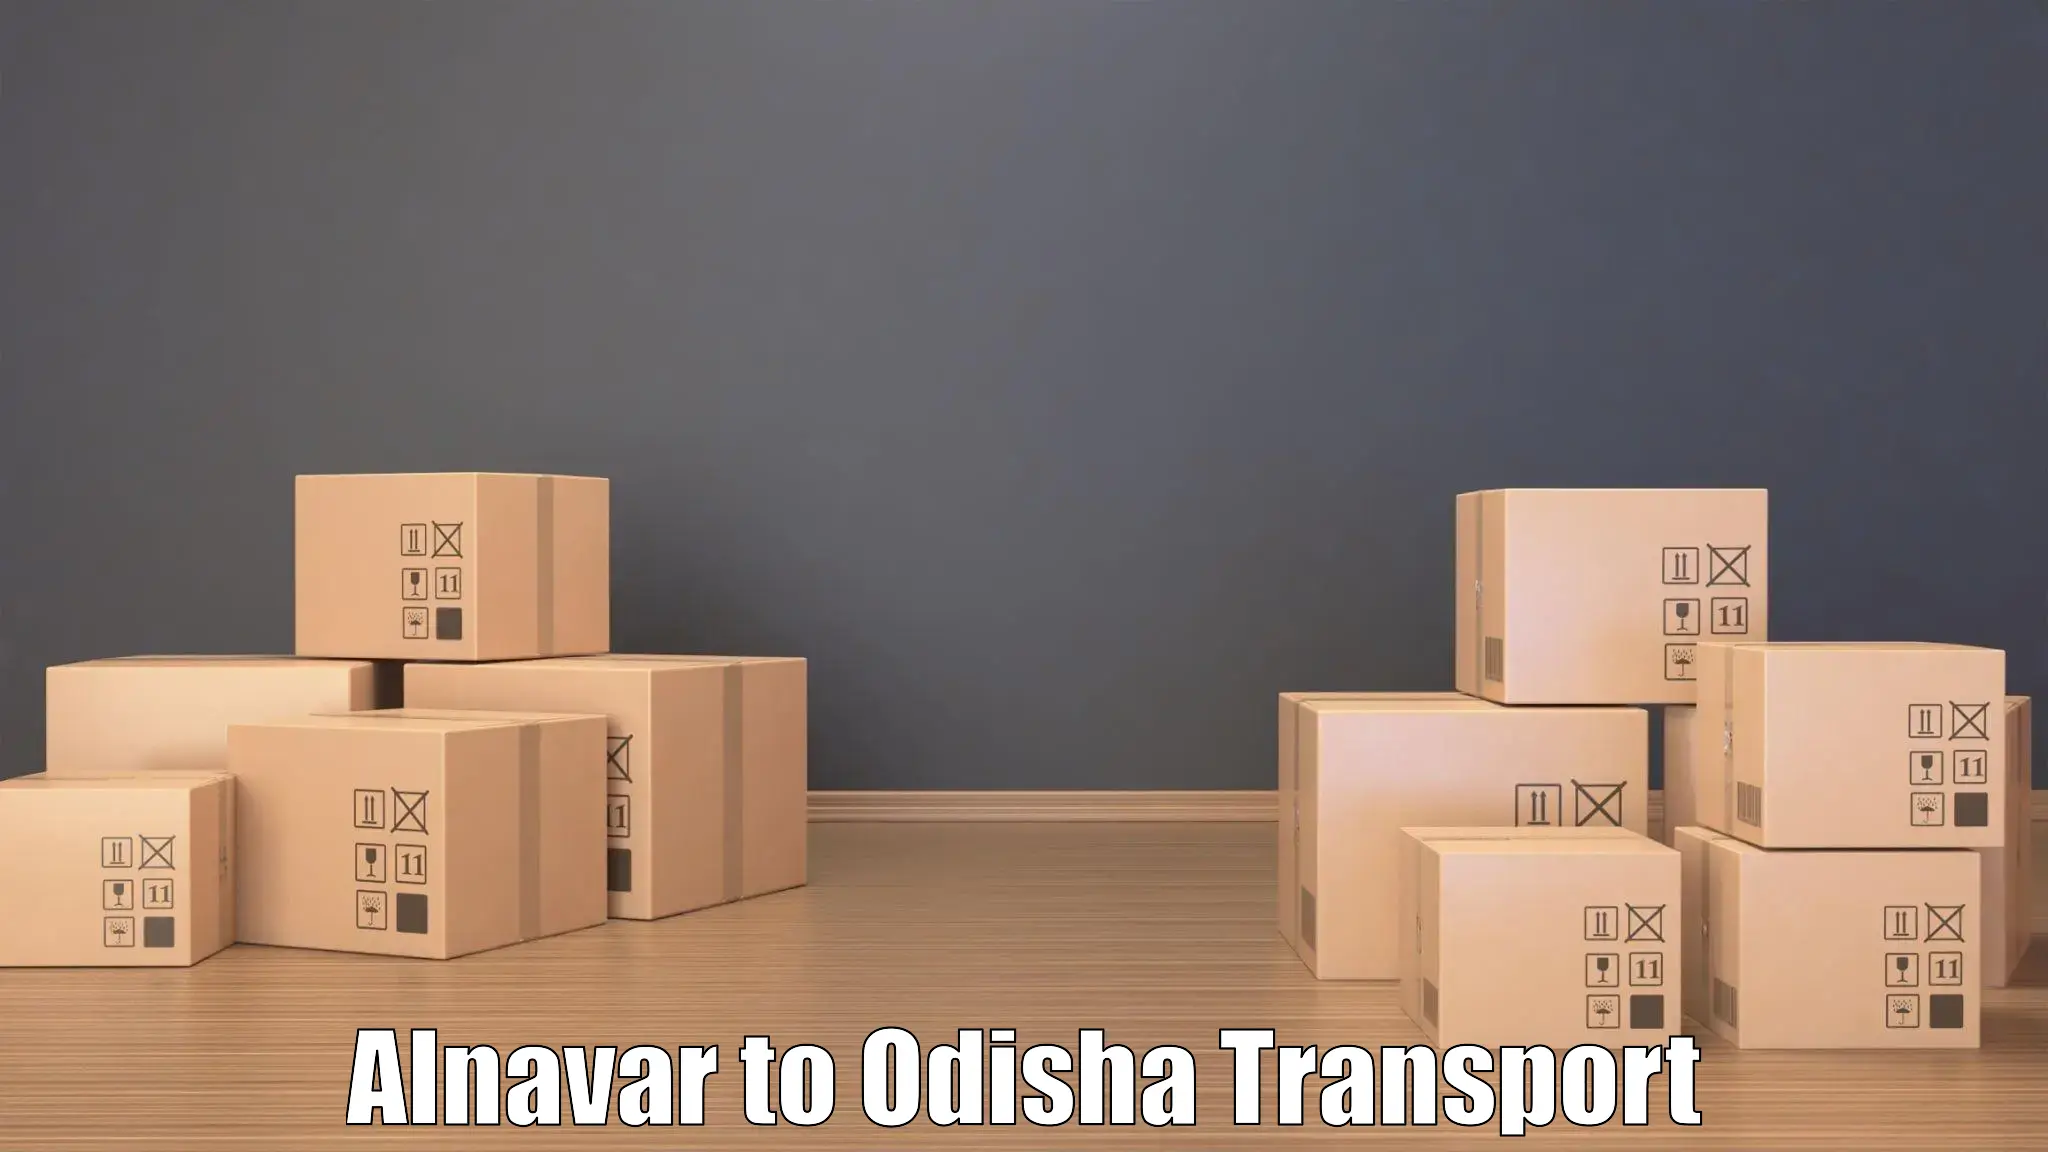 Vehicle transport services in Alnavar to Daspalla